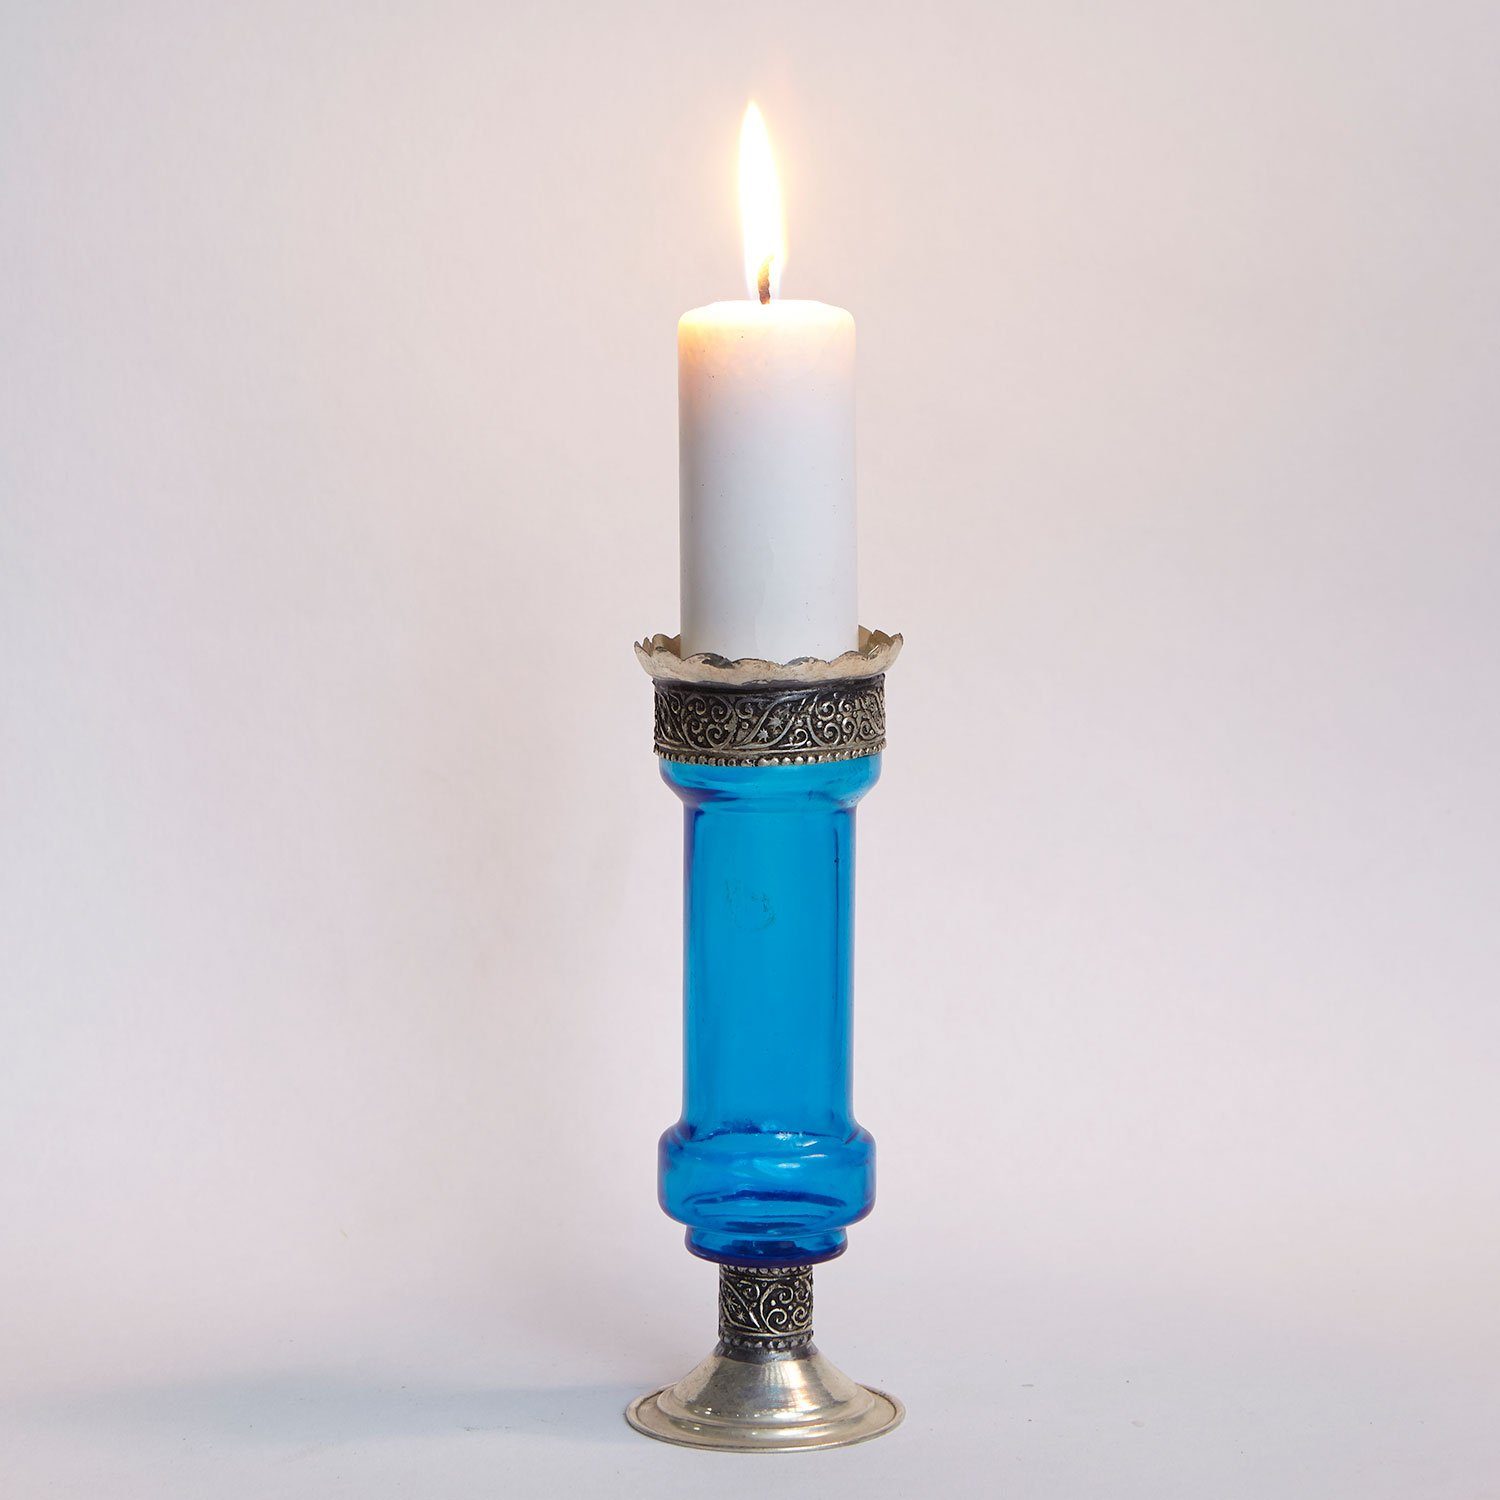 Casa Moro Kerzenständer Orientalischer Kerzenständer marokkanische Kerzenleuchter Manar (Kerzenhalter für romantische Beleuchtung), Kerzenlicht & Weihnachtsdekoration Blau